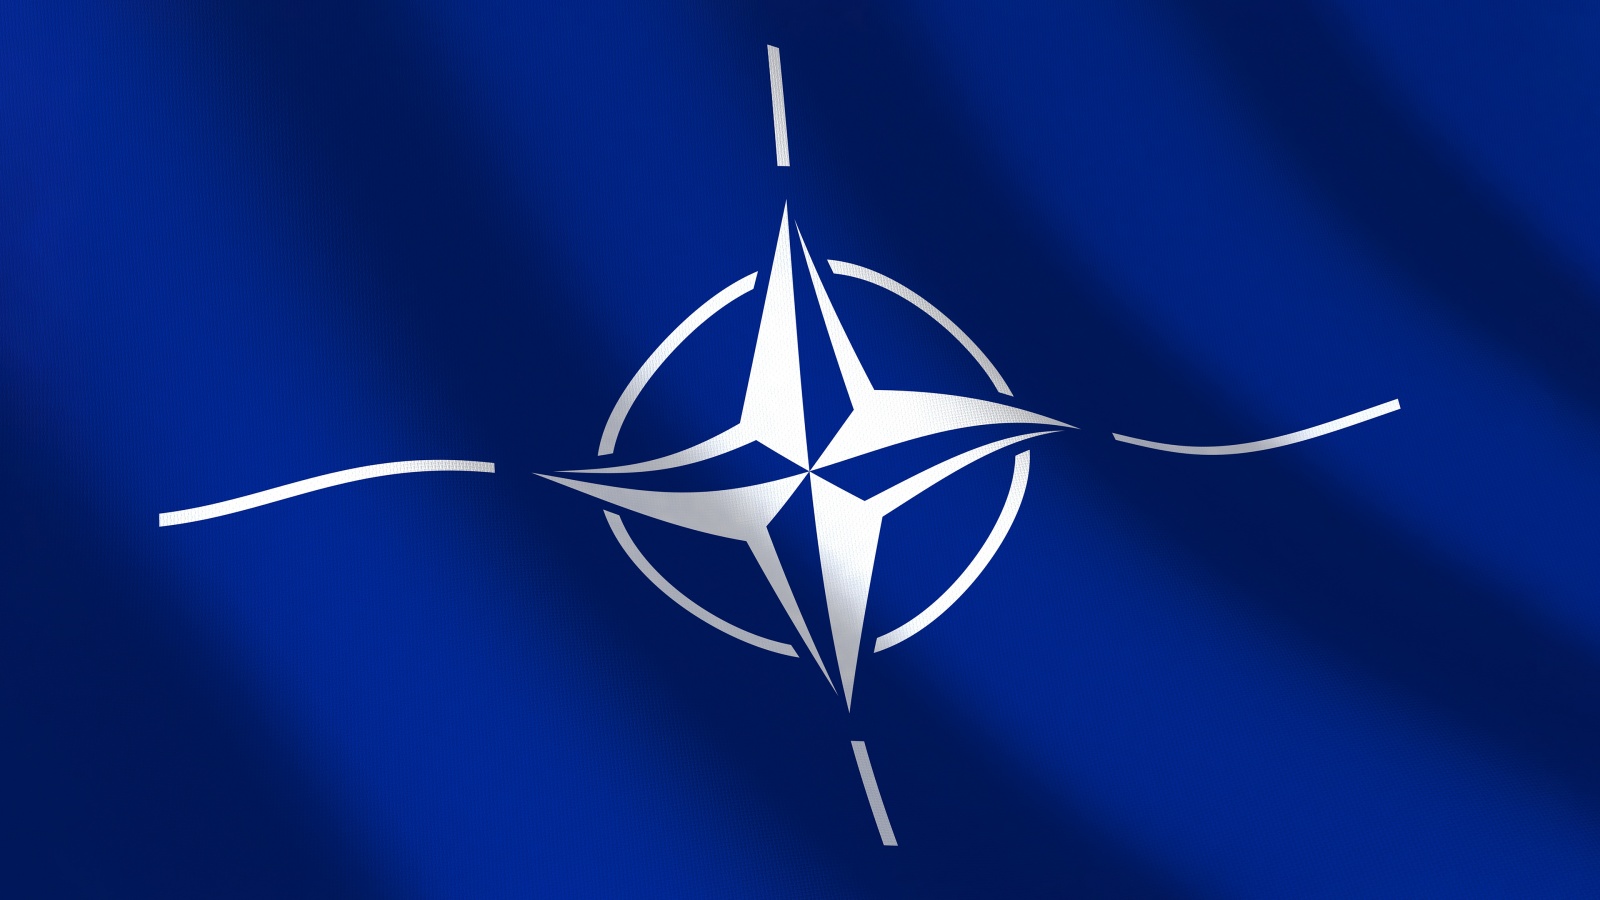 NATO øgede antallet af luftpatruljer i europæiske allierede lande